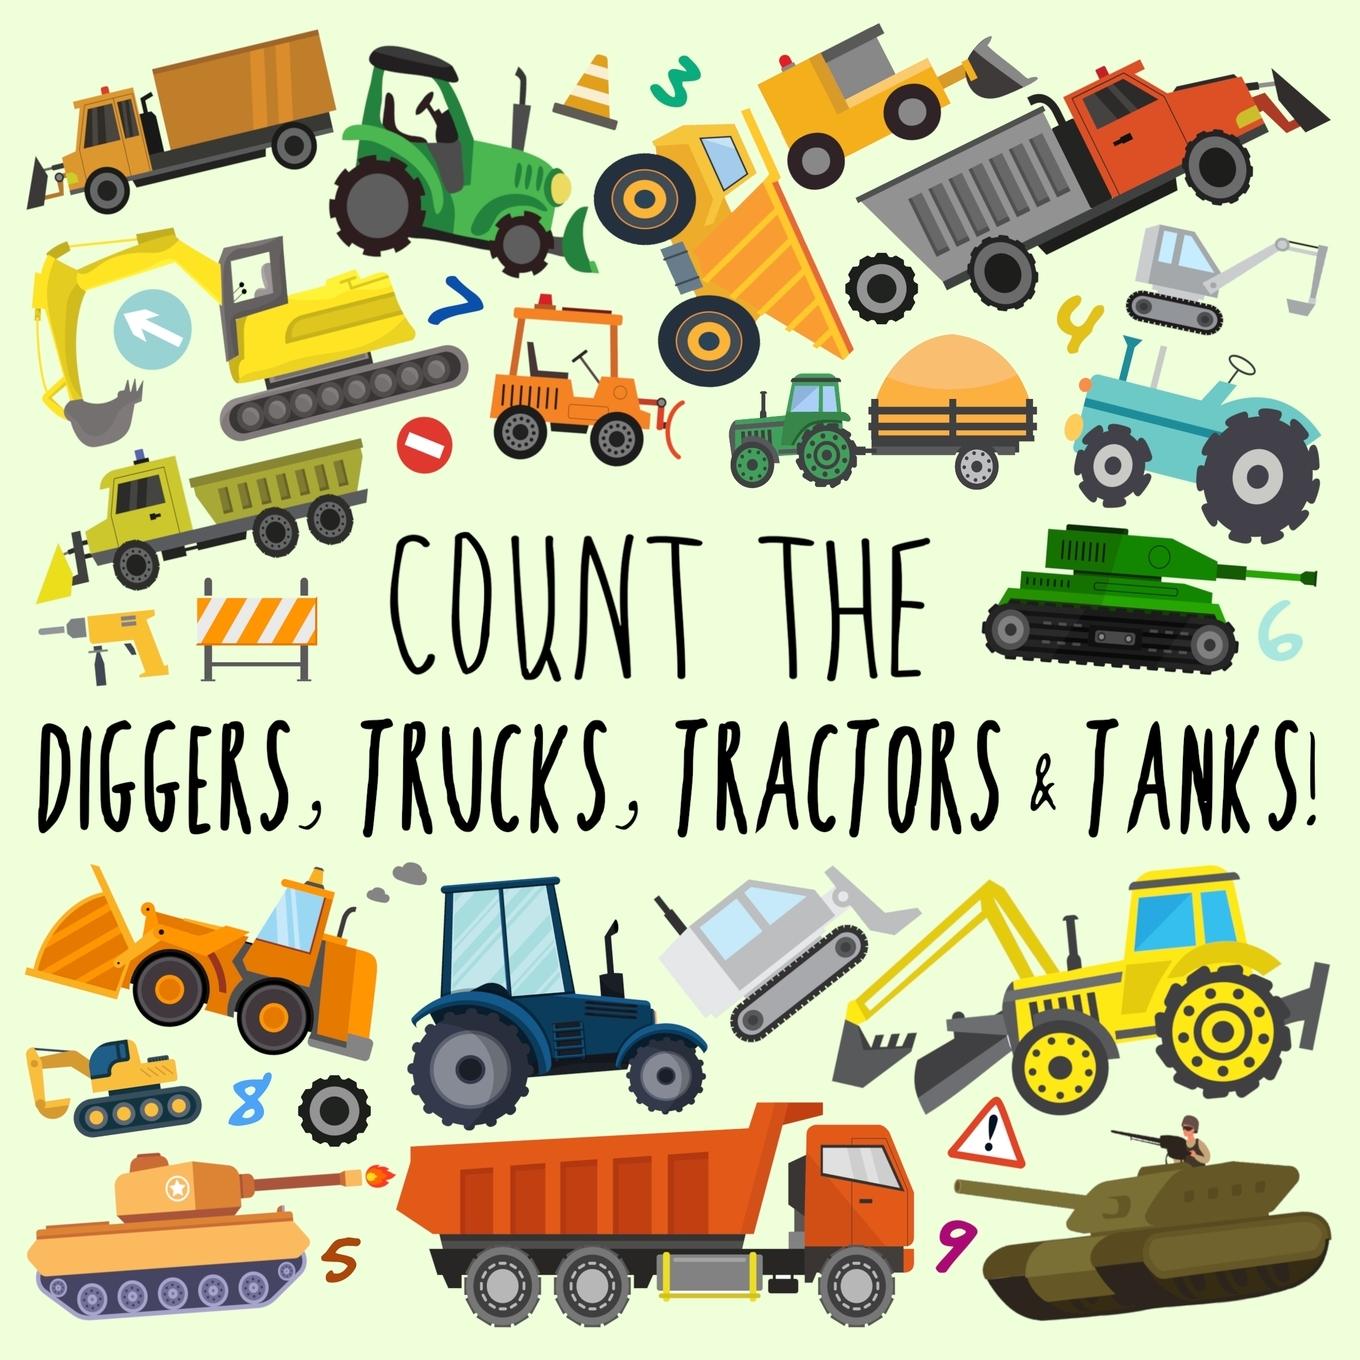 Book Count the Diggers, Trucks, Tractors & Tanks! 